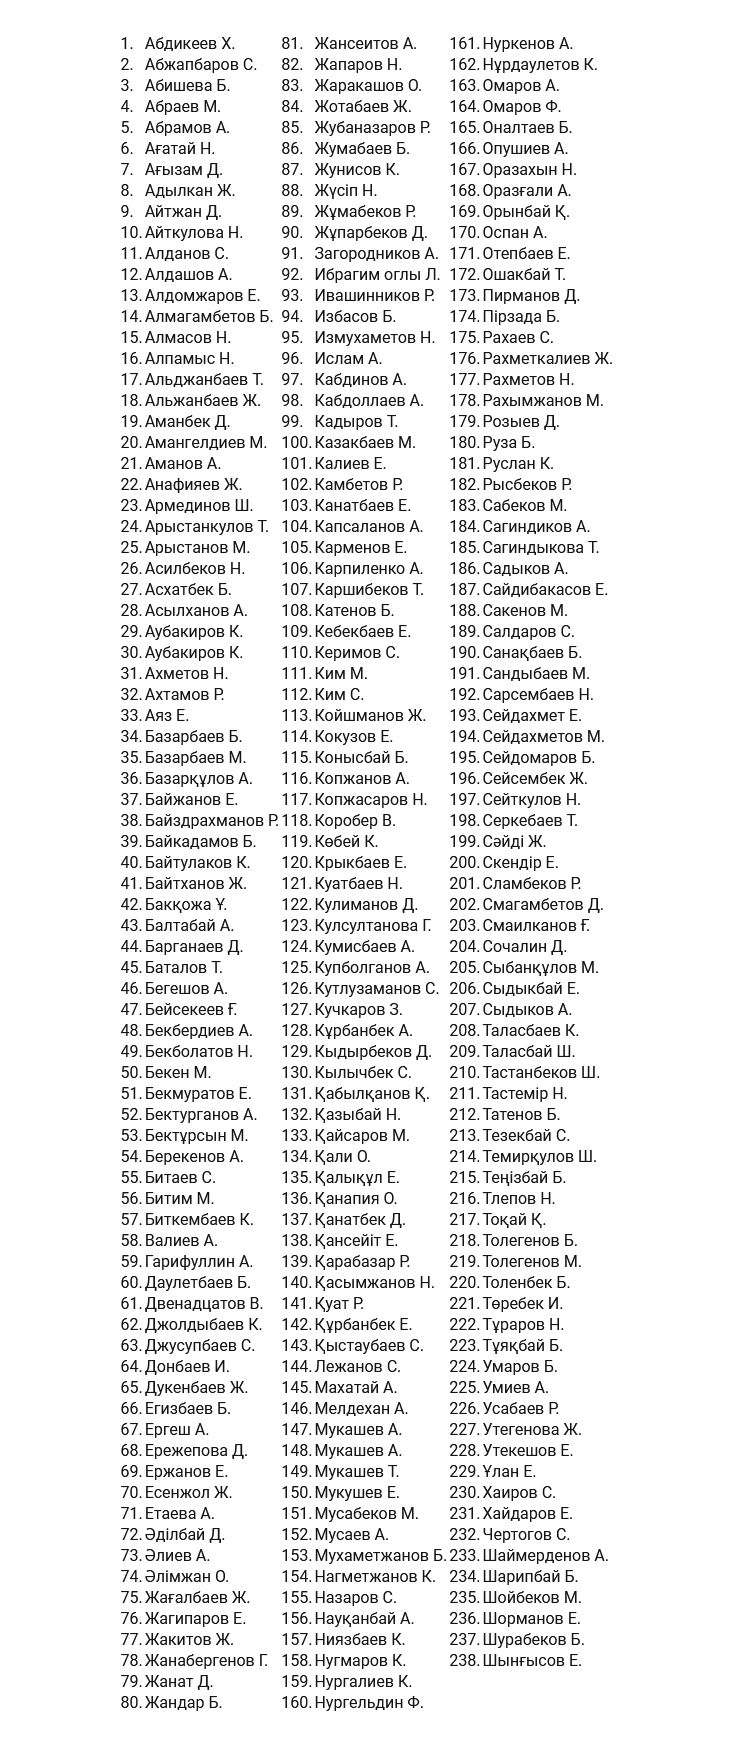 Список погибших 143